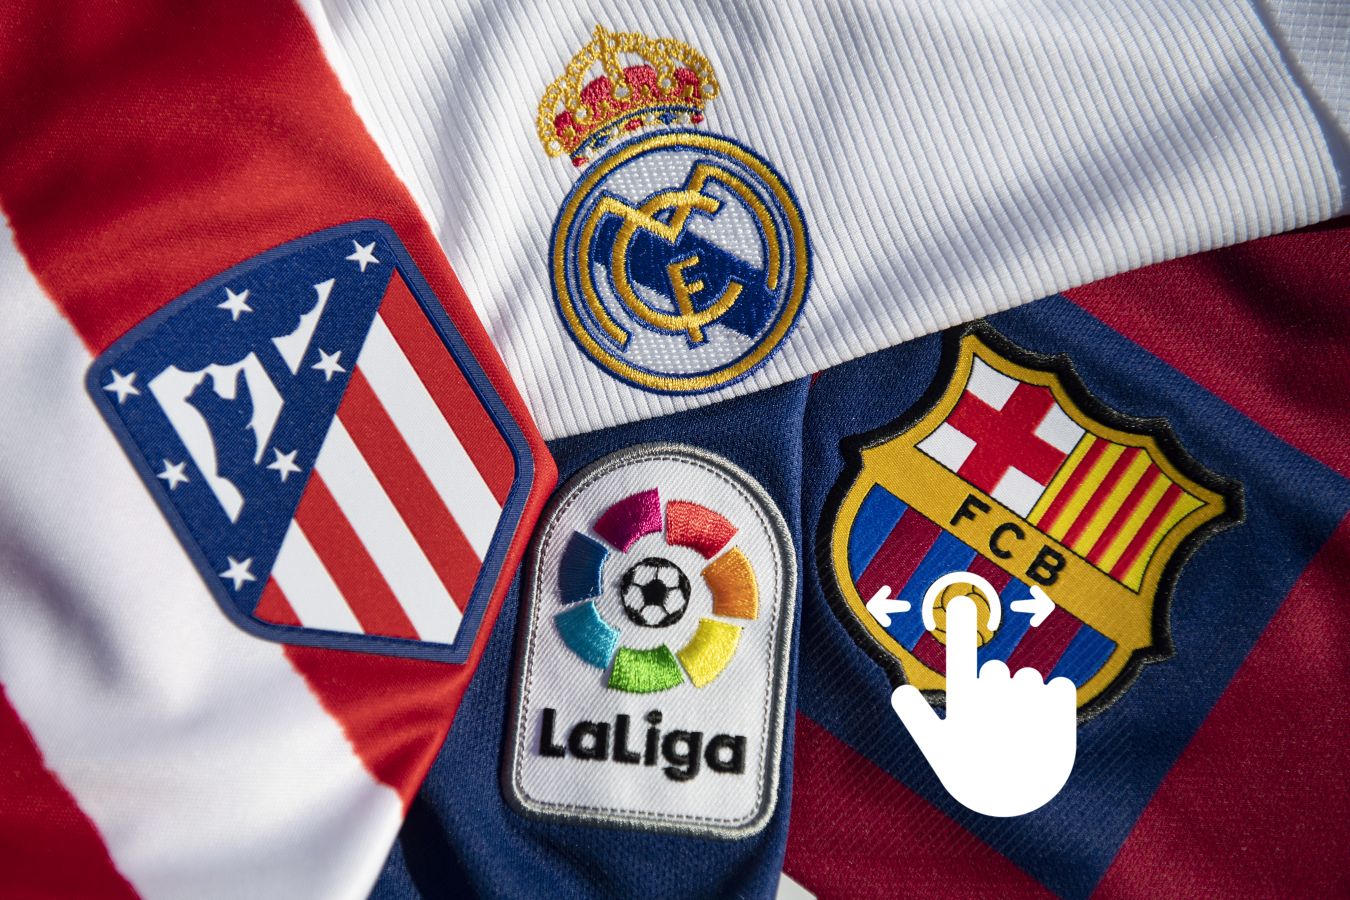 Логотипы футбольных клубов испании и